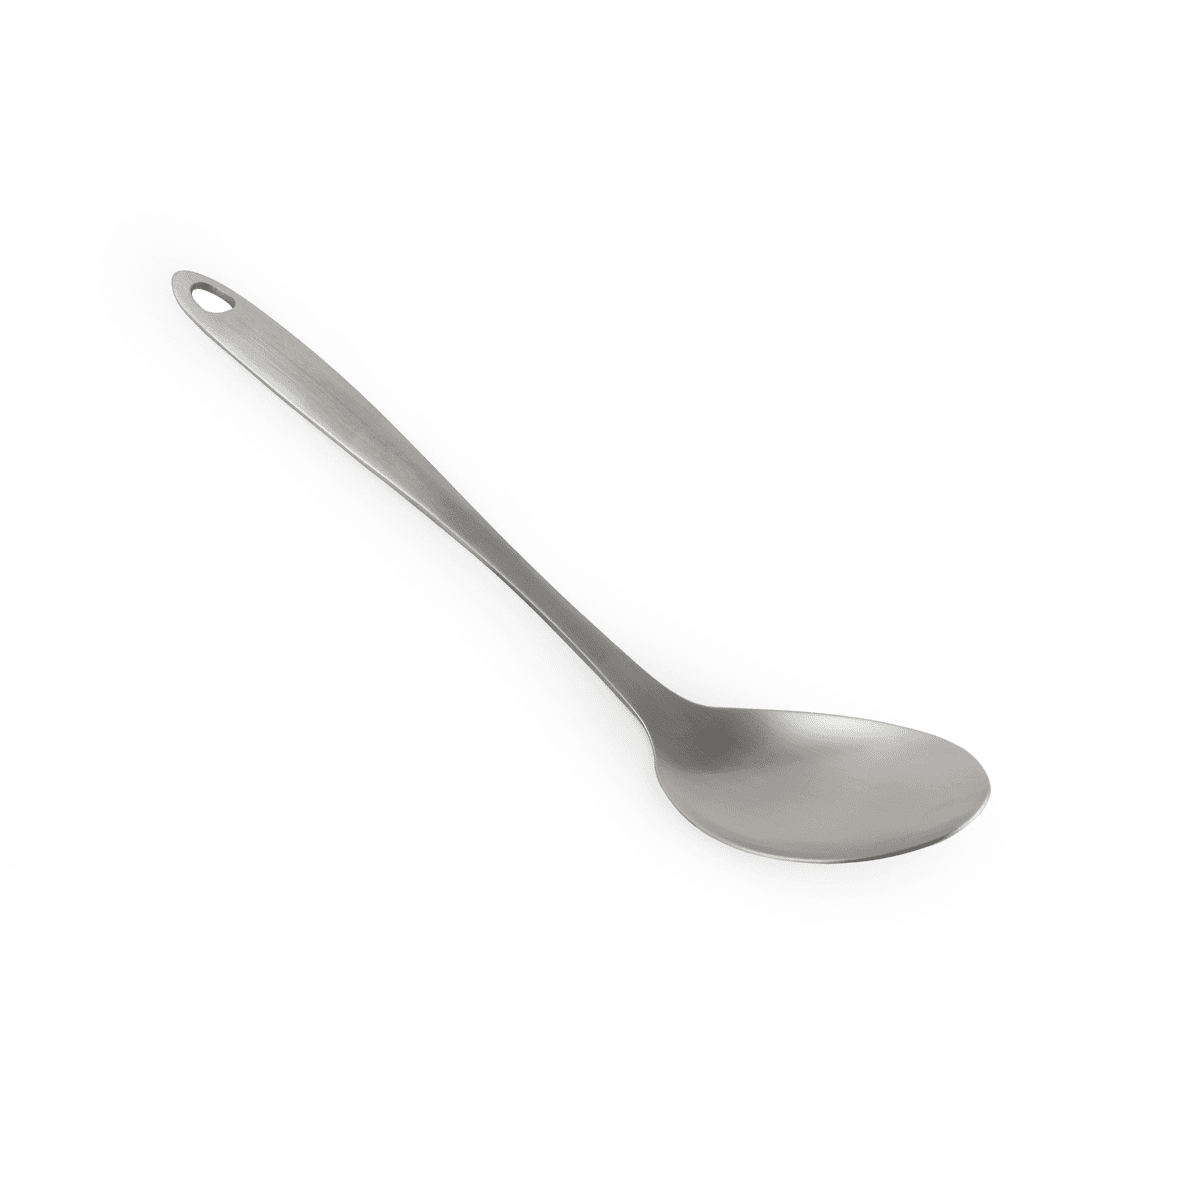 ملعقة غرف ستانلس ستيل 26 سم فضي ڤاج Vague Stainless Steel Serving Spoon 26 cm